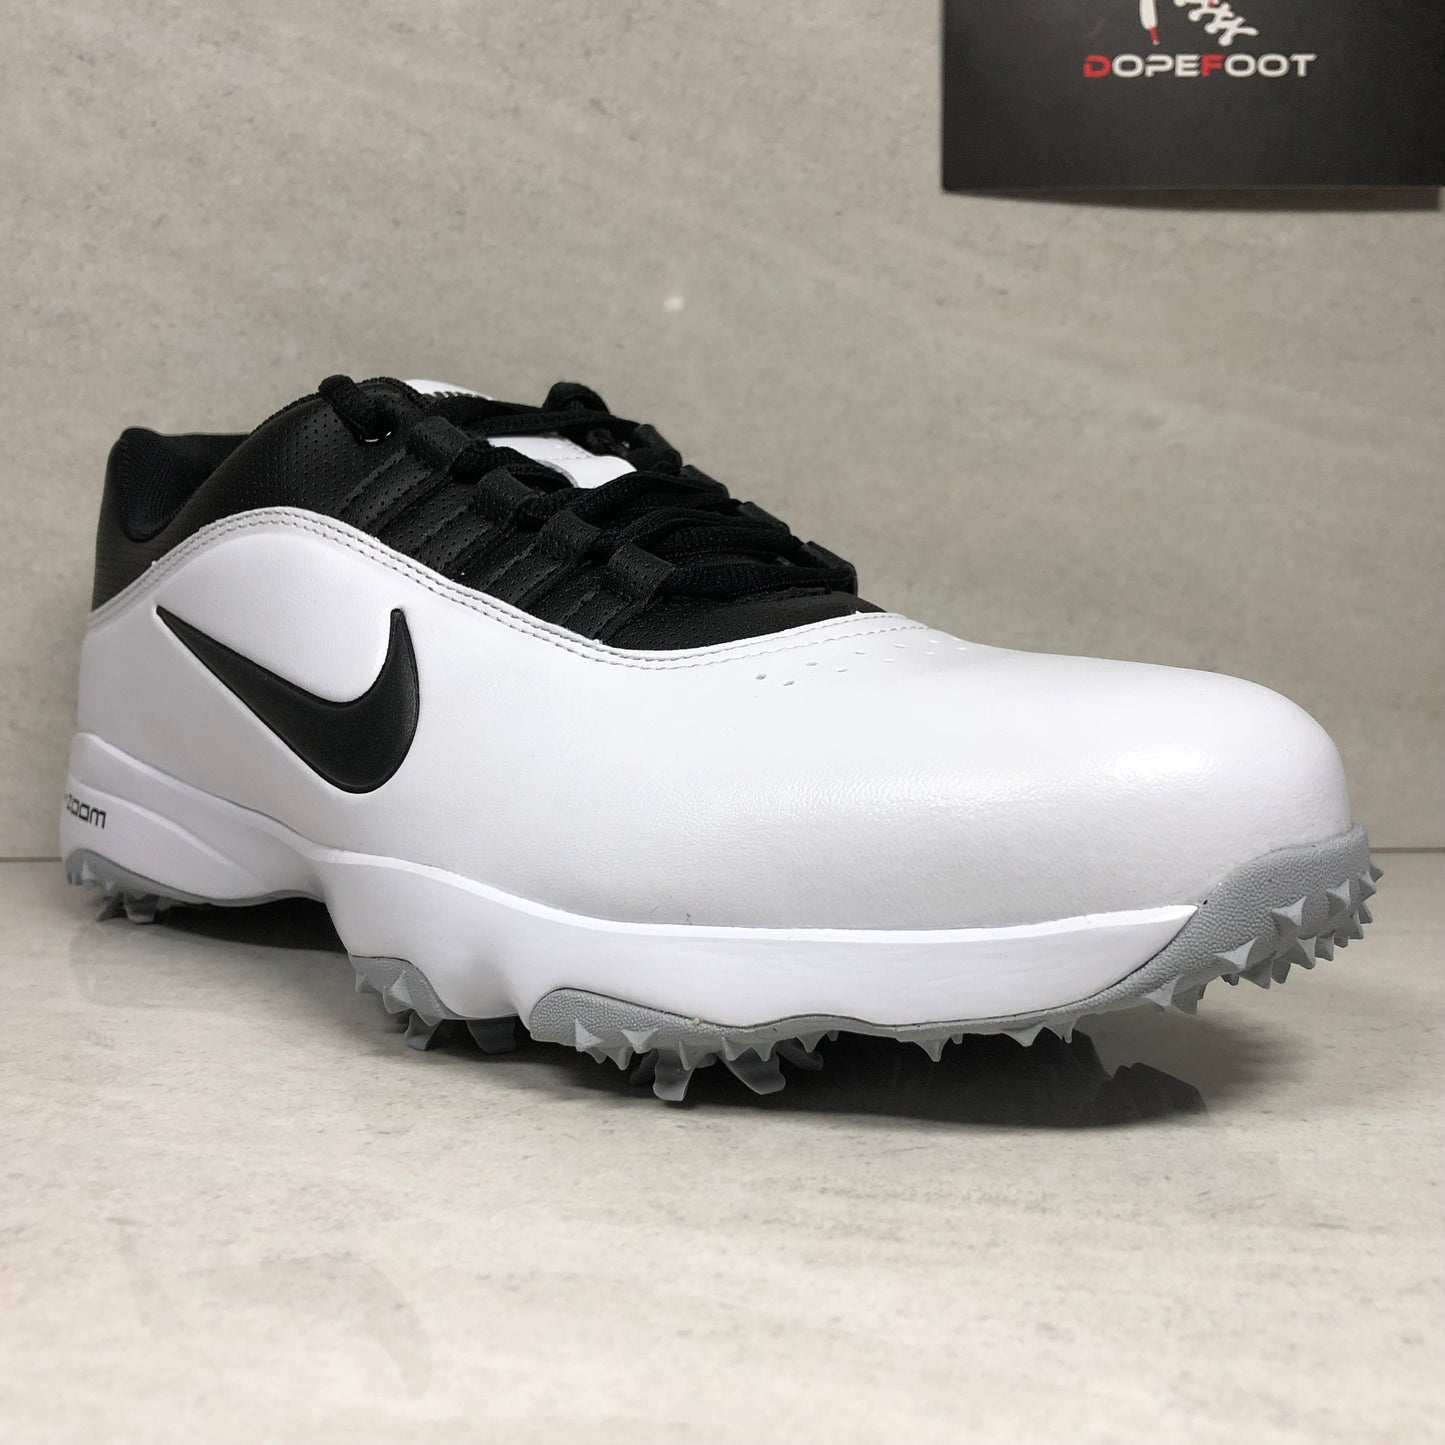 Nike Air Zoom Rival Golf Chaussure Taille 14 Blanc/Noir 878957 100